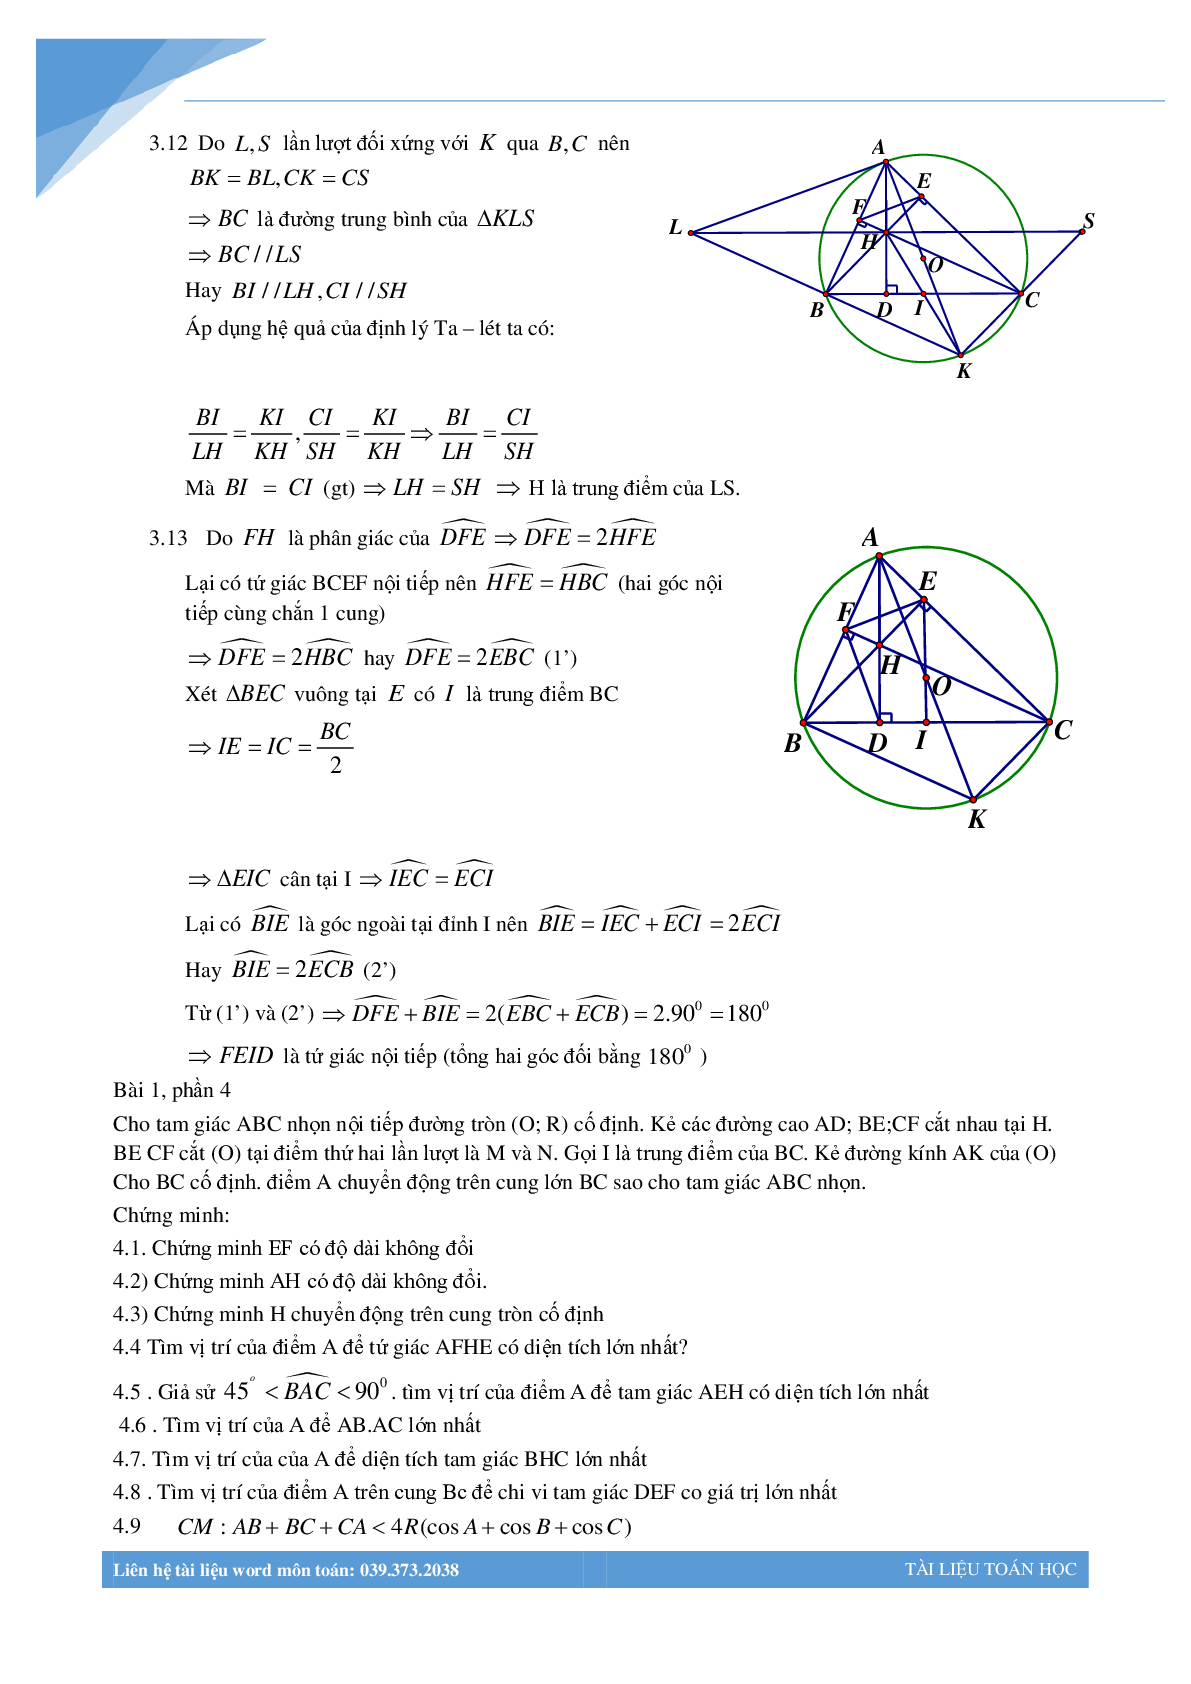 Chùm bài toán hình học luyện thi vào lớp 10 (trang 6)